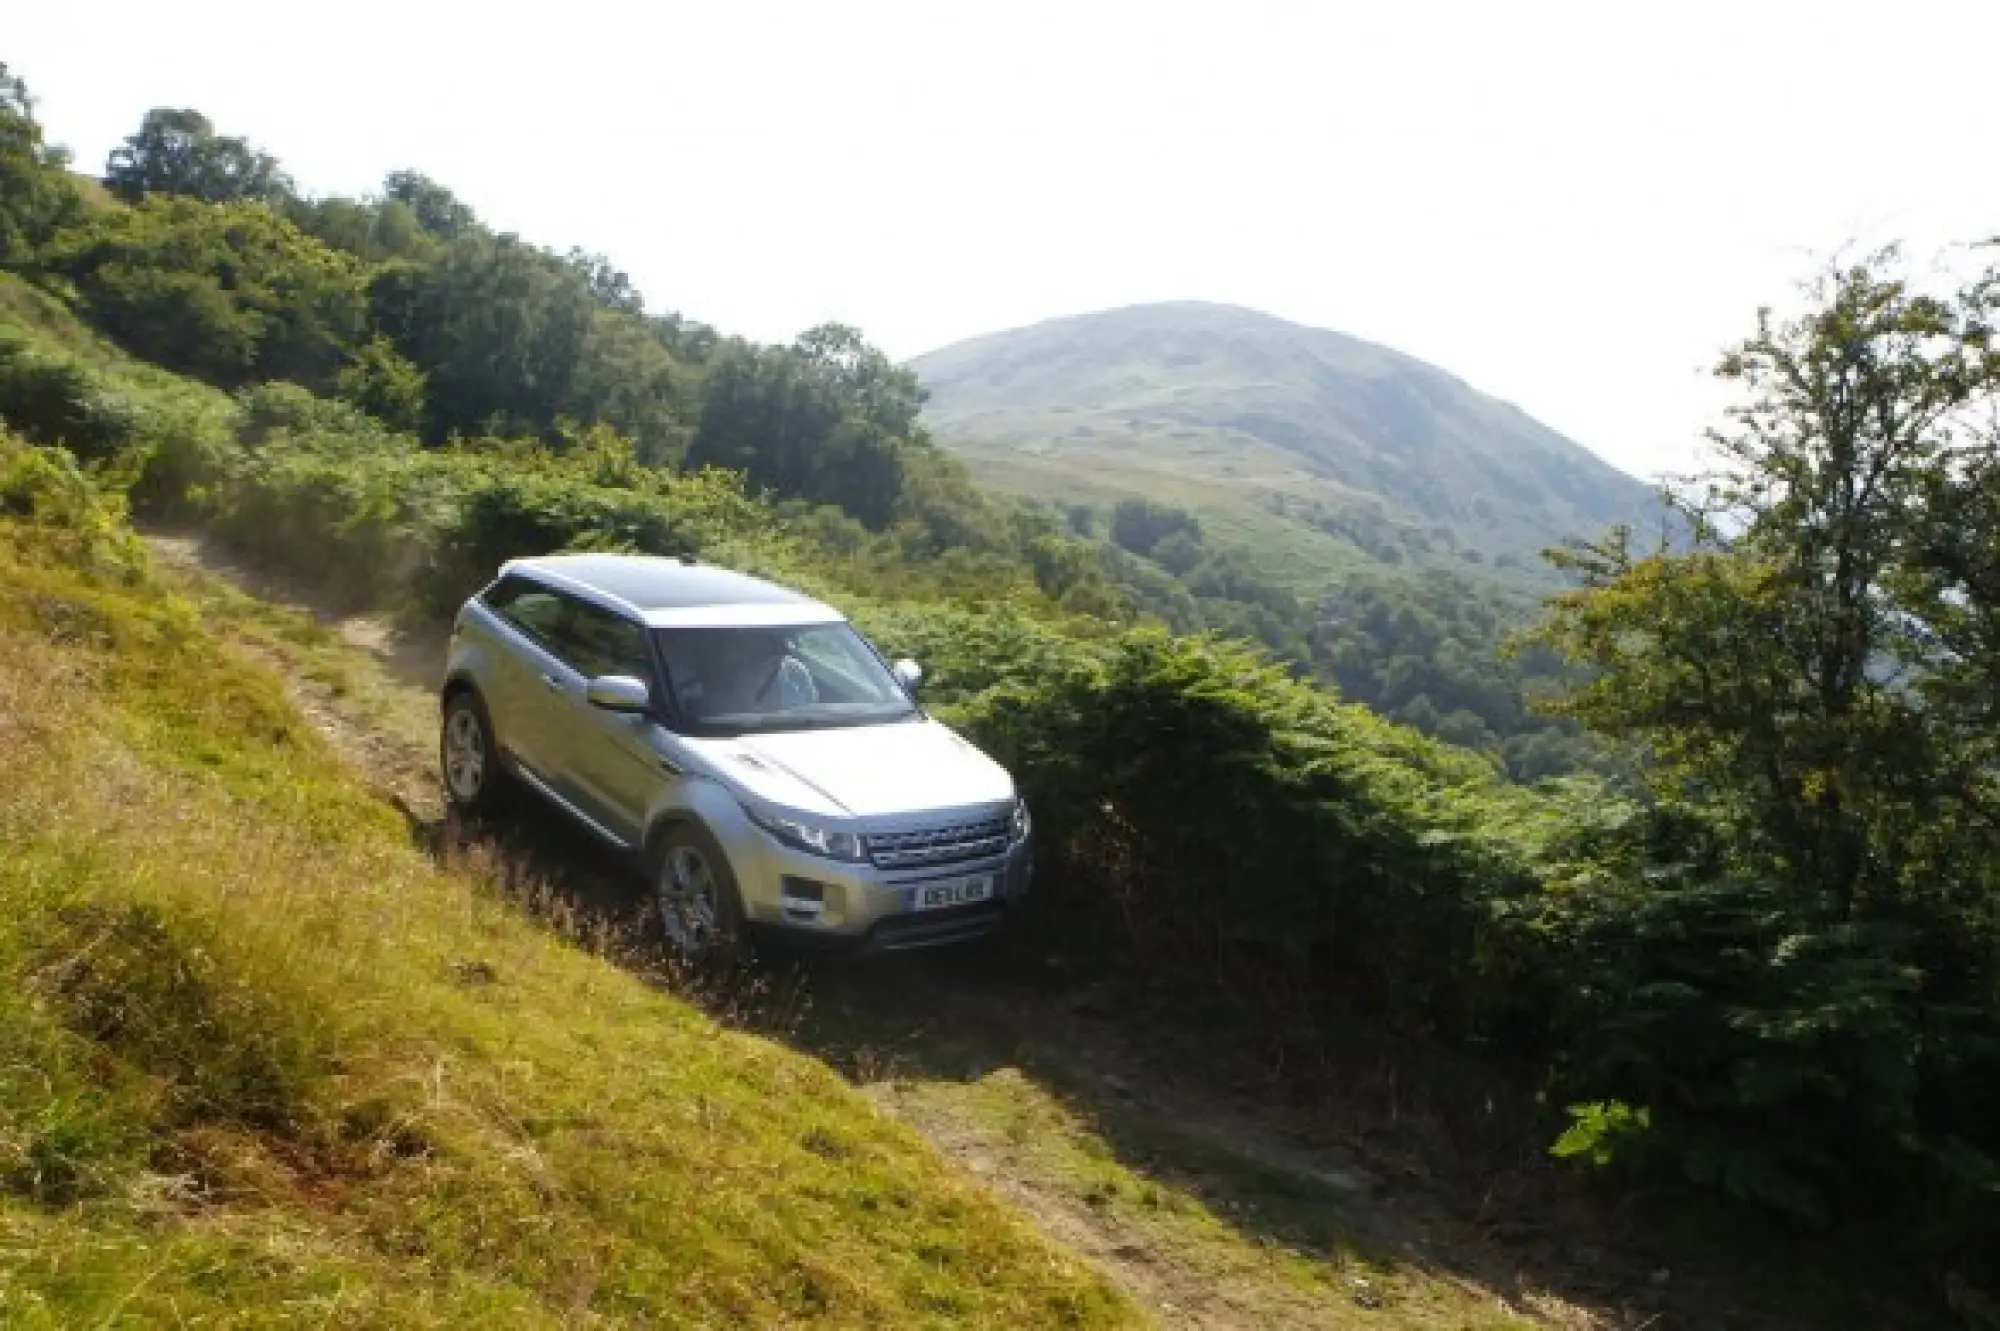 Land Rover Range Rover Evoque nuove foto ufficiali - 85